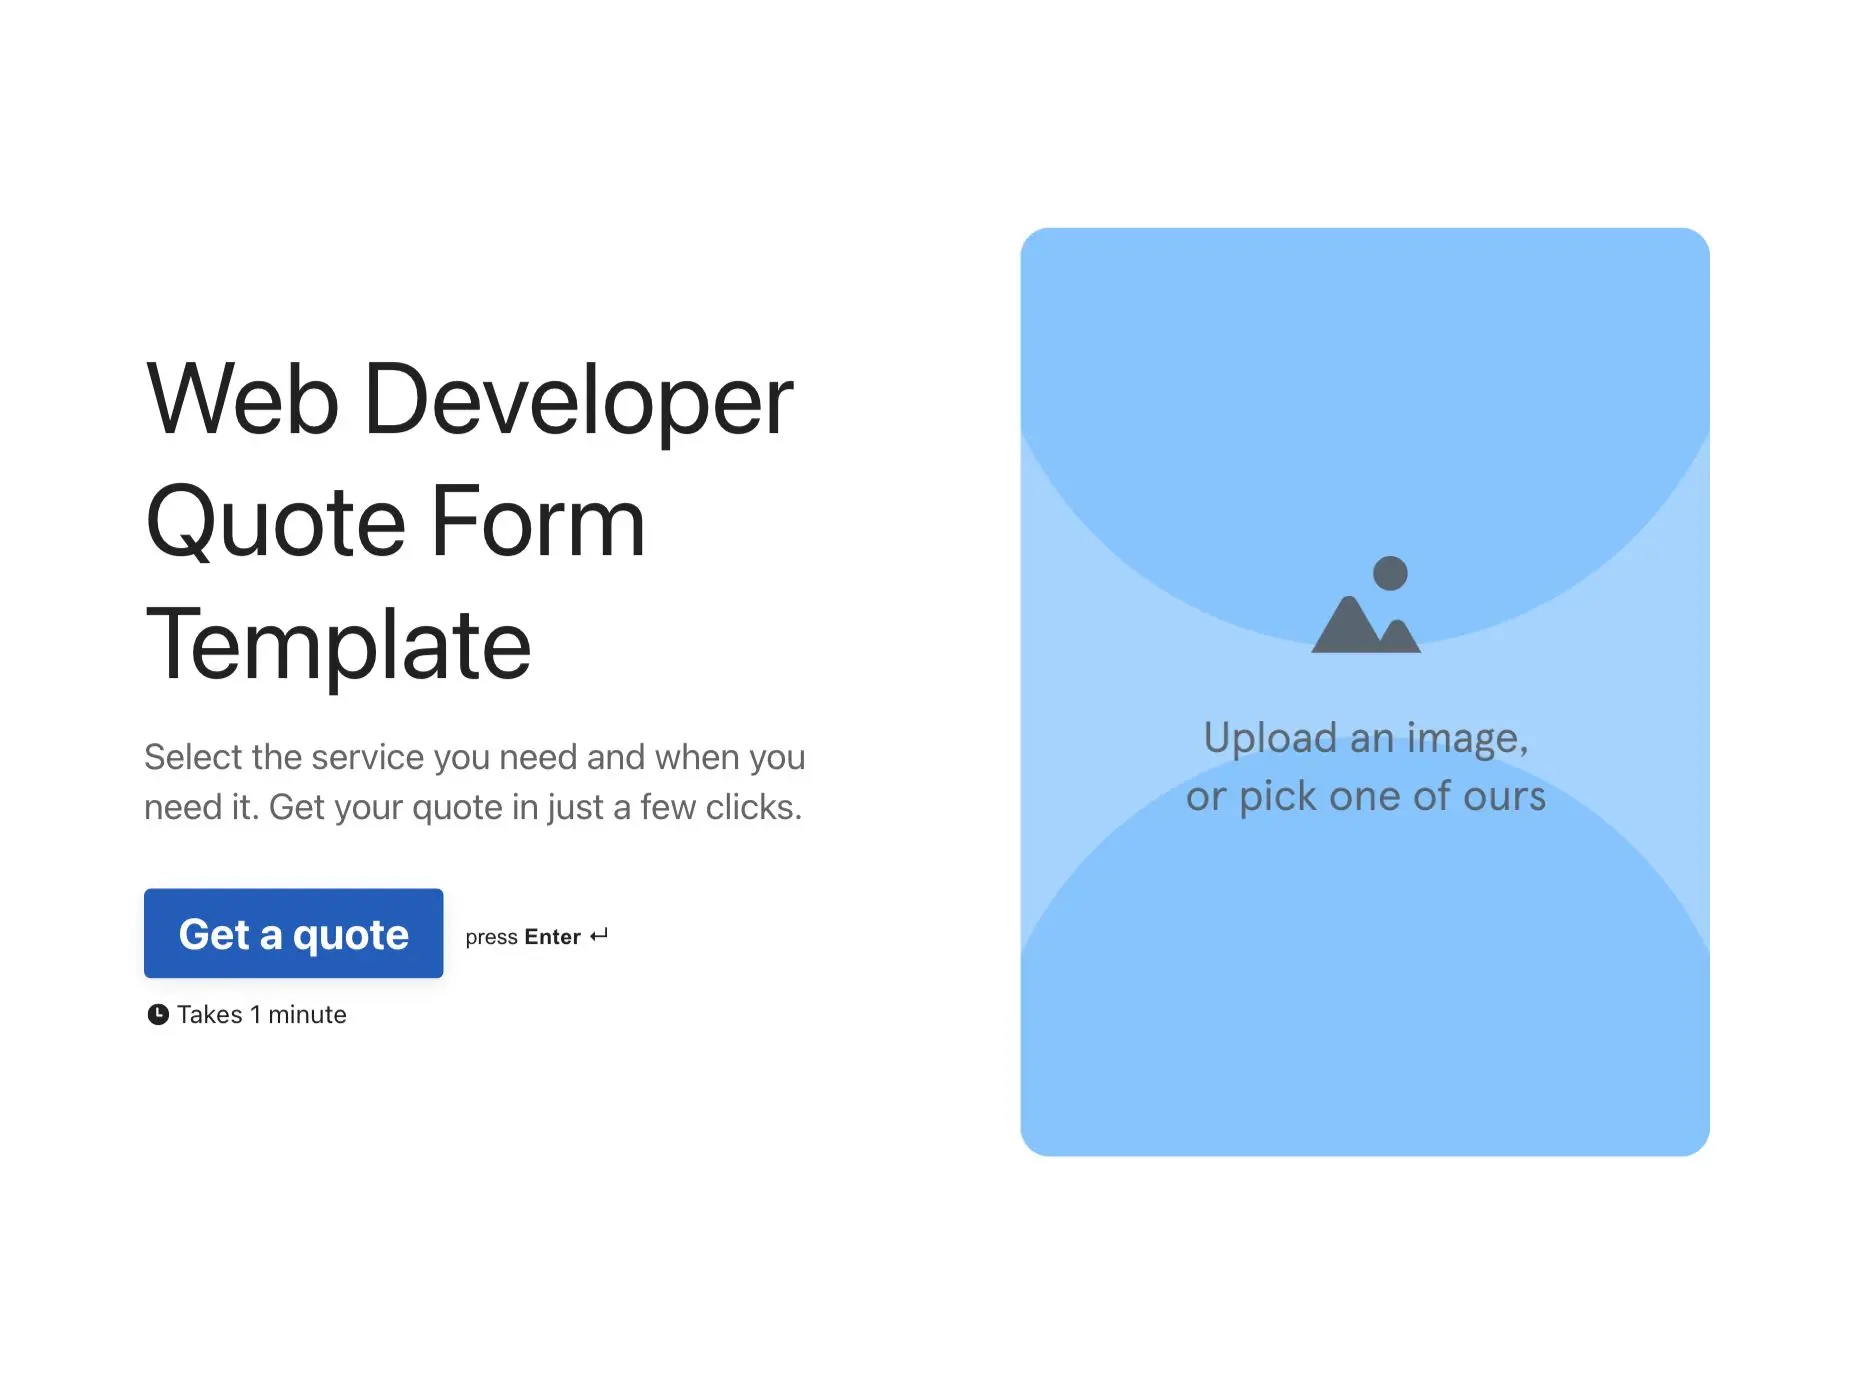 Web Developer Quote Form Template Hero